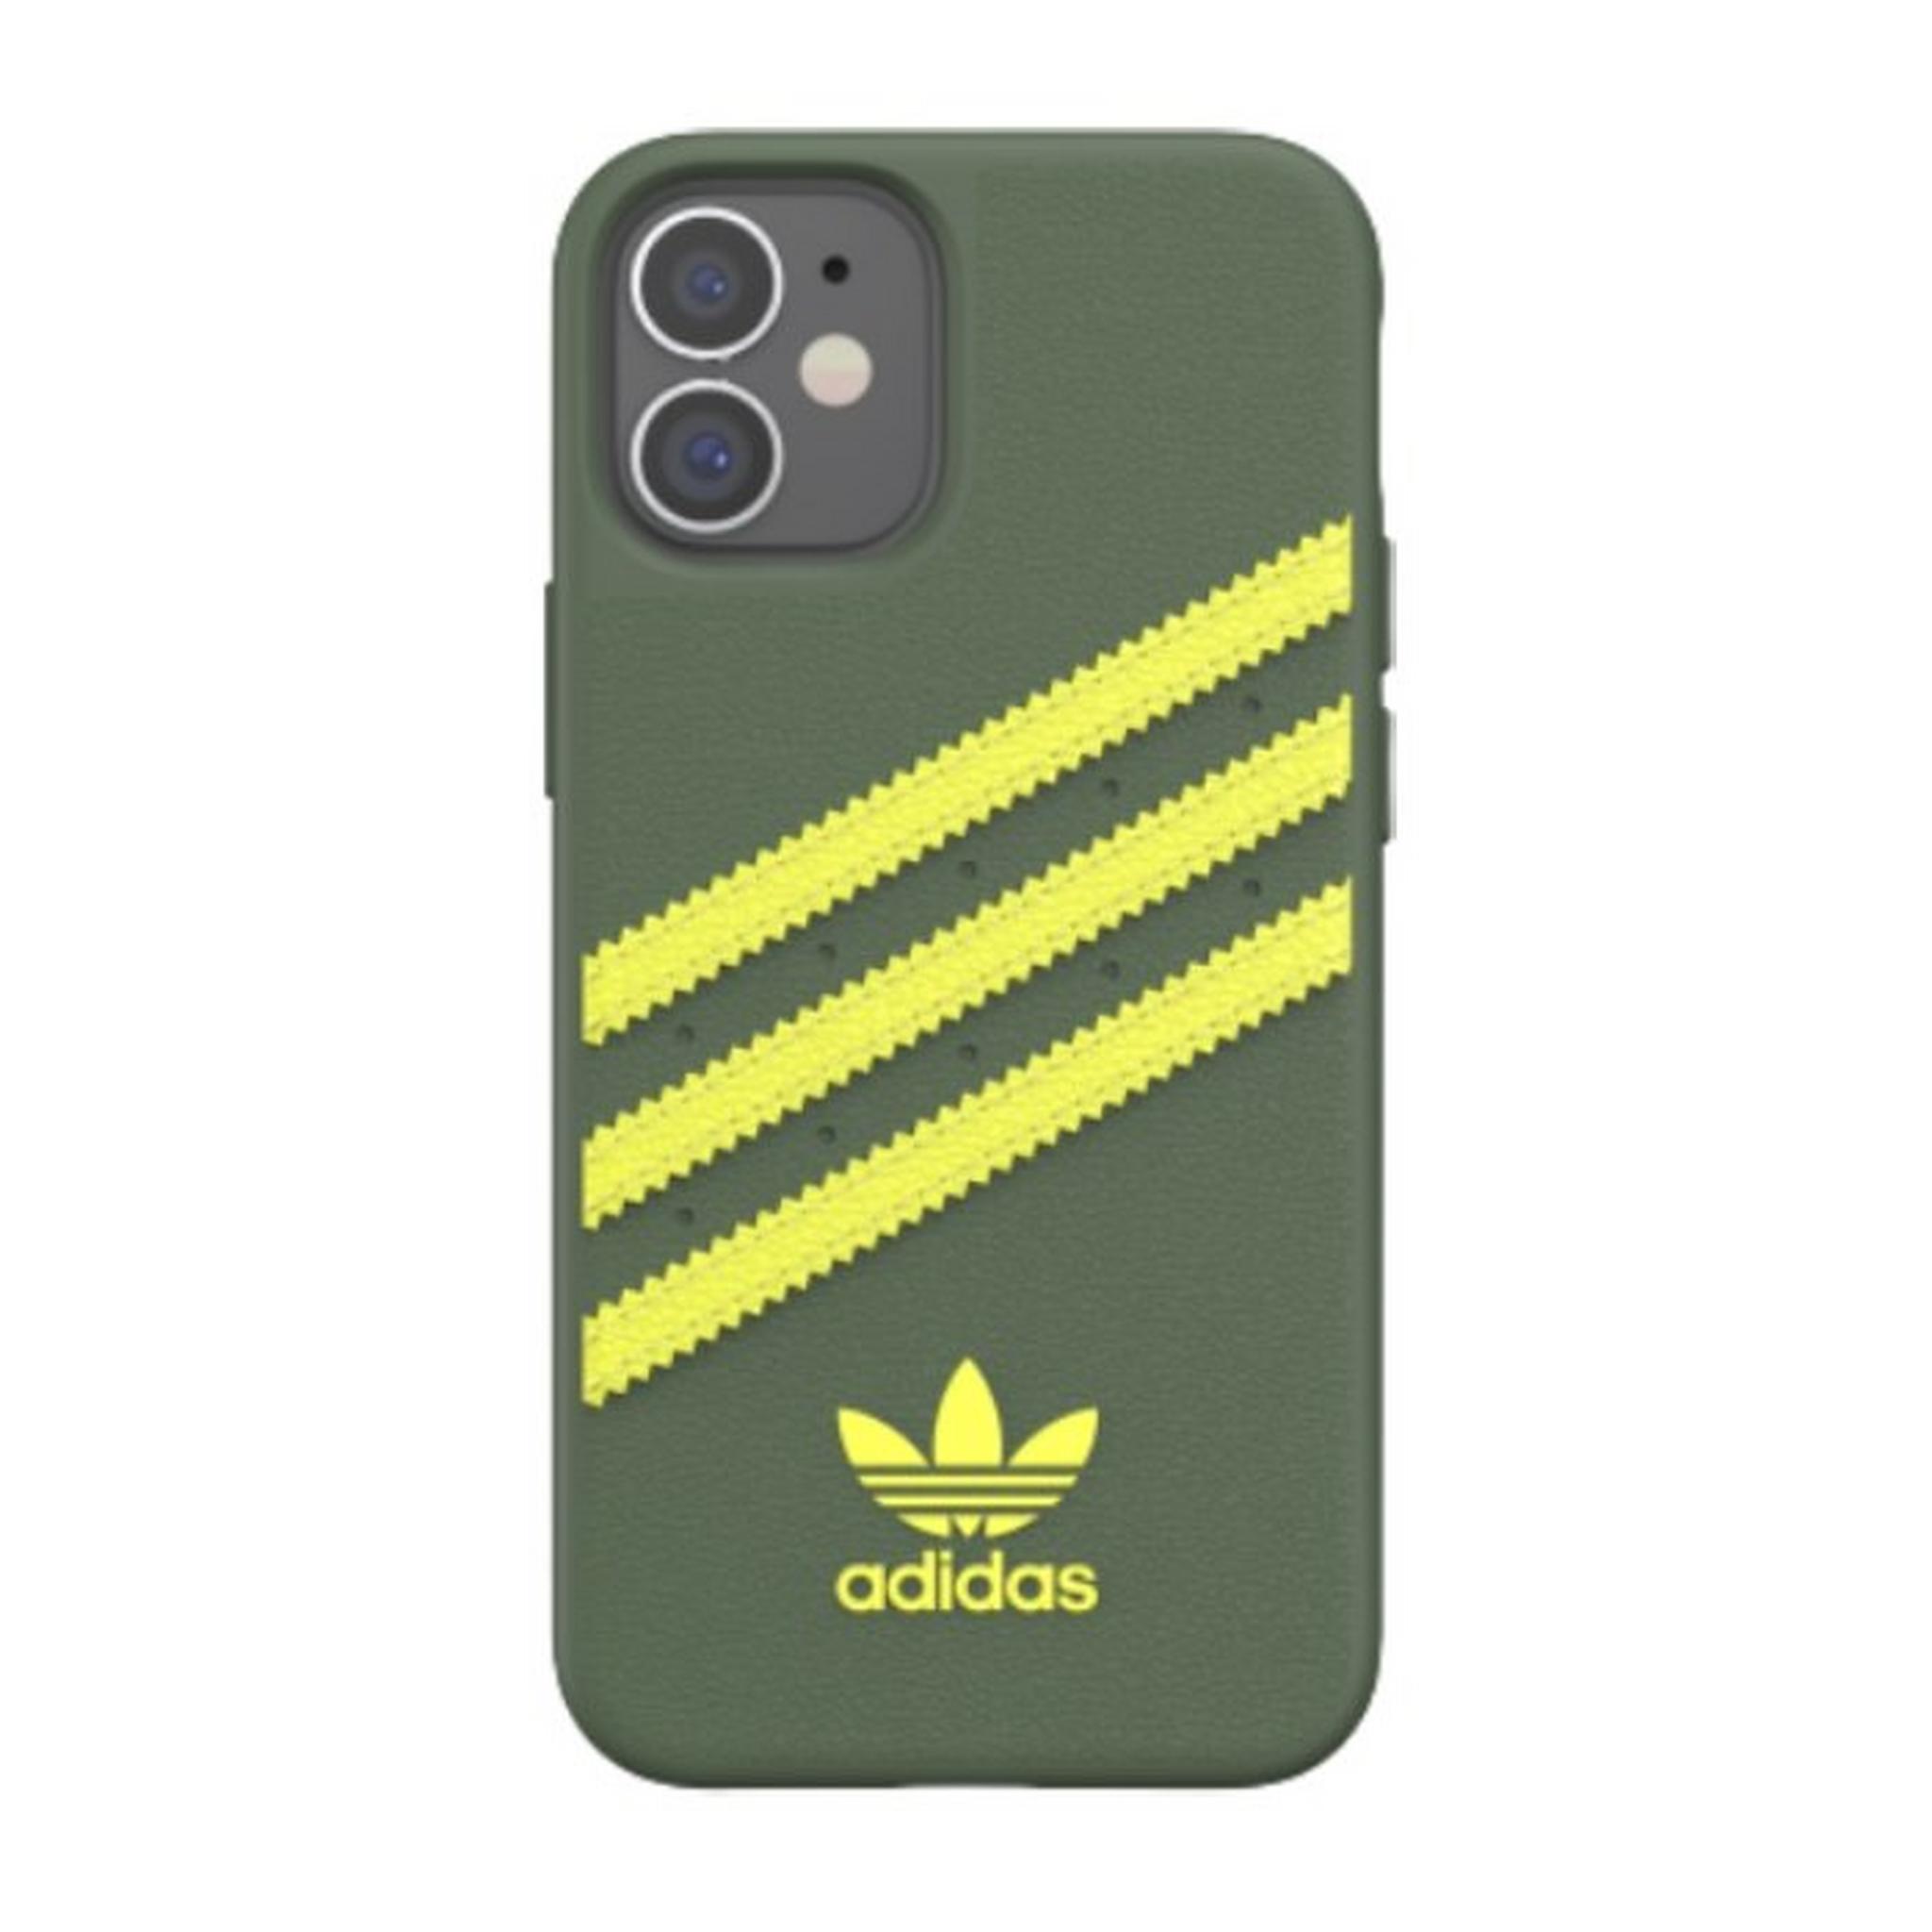 Adidas Original iPhone 12 Mini Moulded Case - Wild Pine